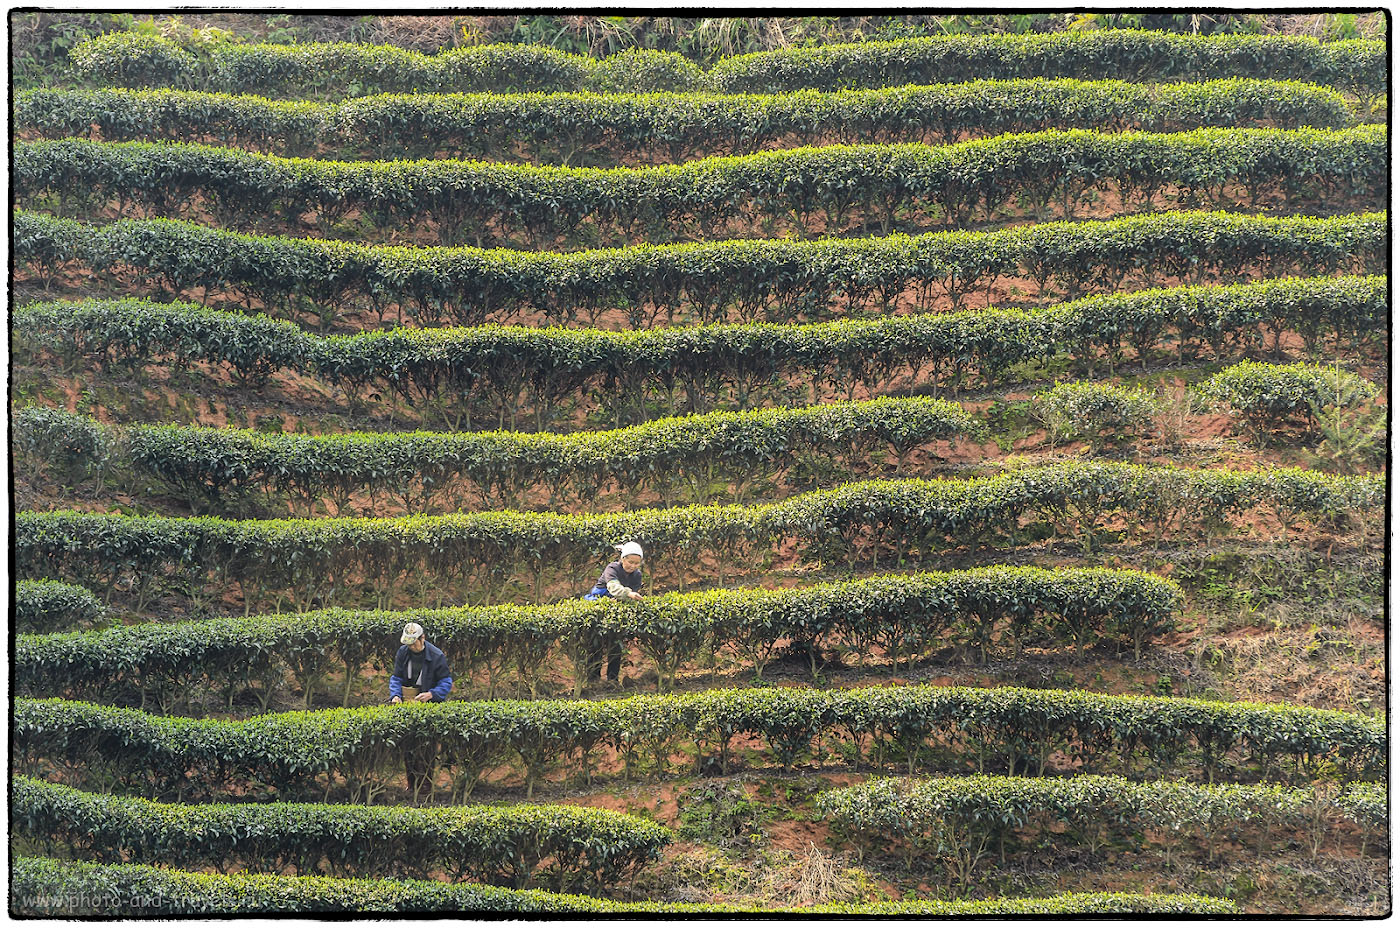 10. Китайские чайные плантации, в отличие от аналогов на Шри-Ланке, не такие изумрудно-зеленые. Снято на Nikon D5100 и телевик Nikon 70-300 при ФР=170 мм. Расстояние до объекта съемки - примерно, 100 метров. Отчет о поездке в Китай.